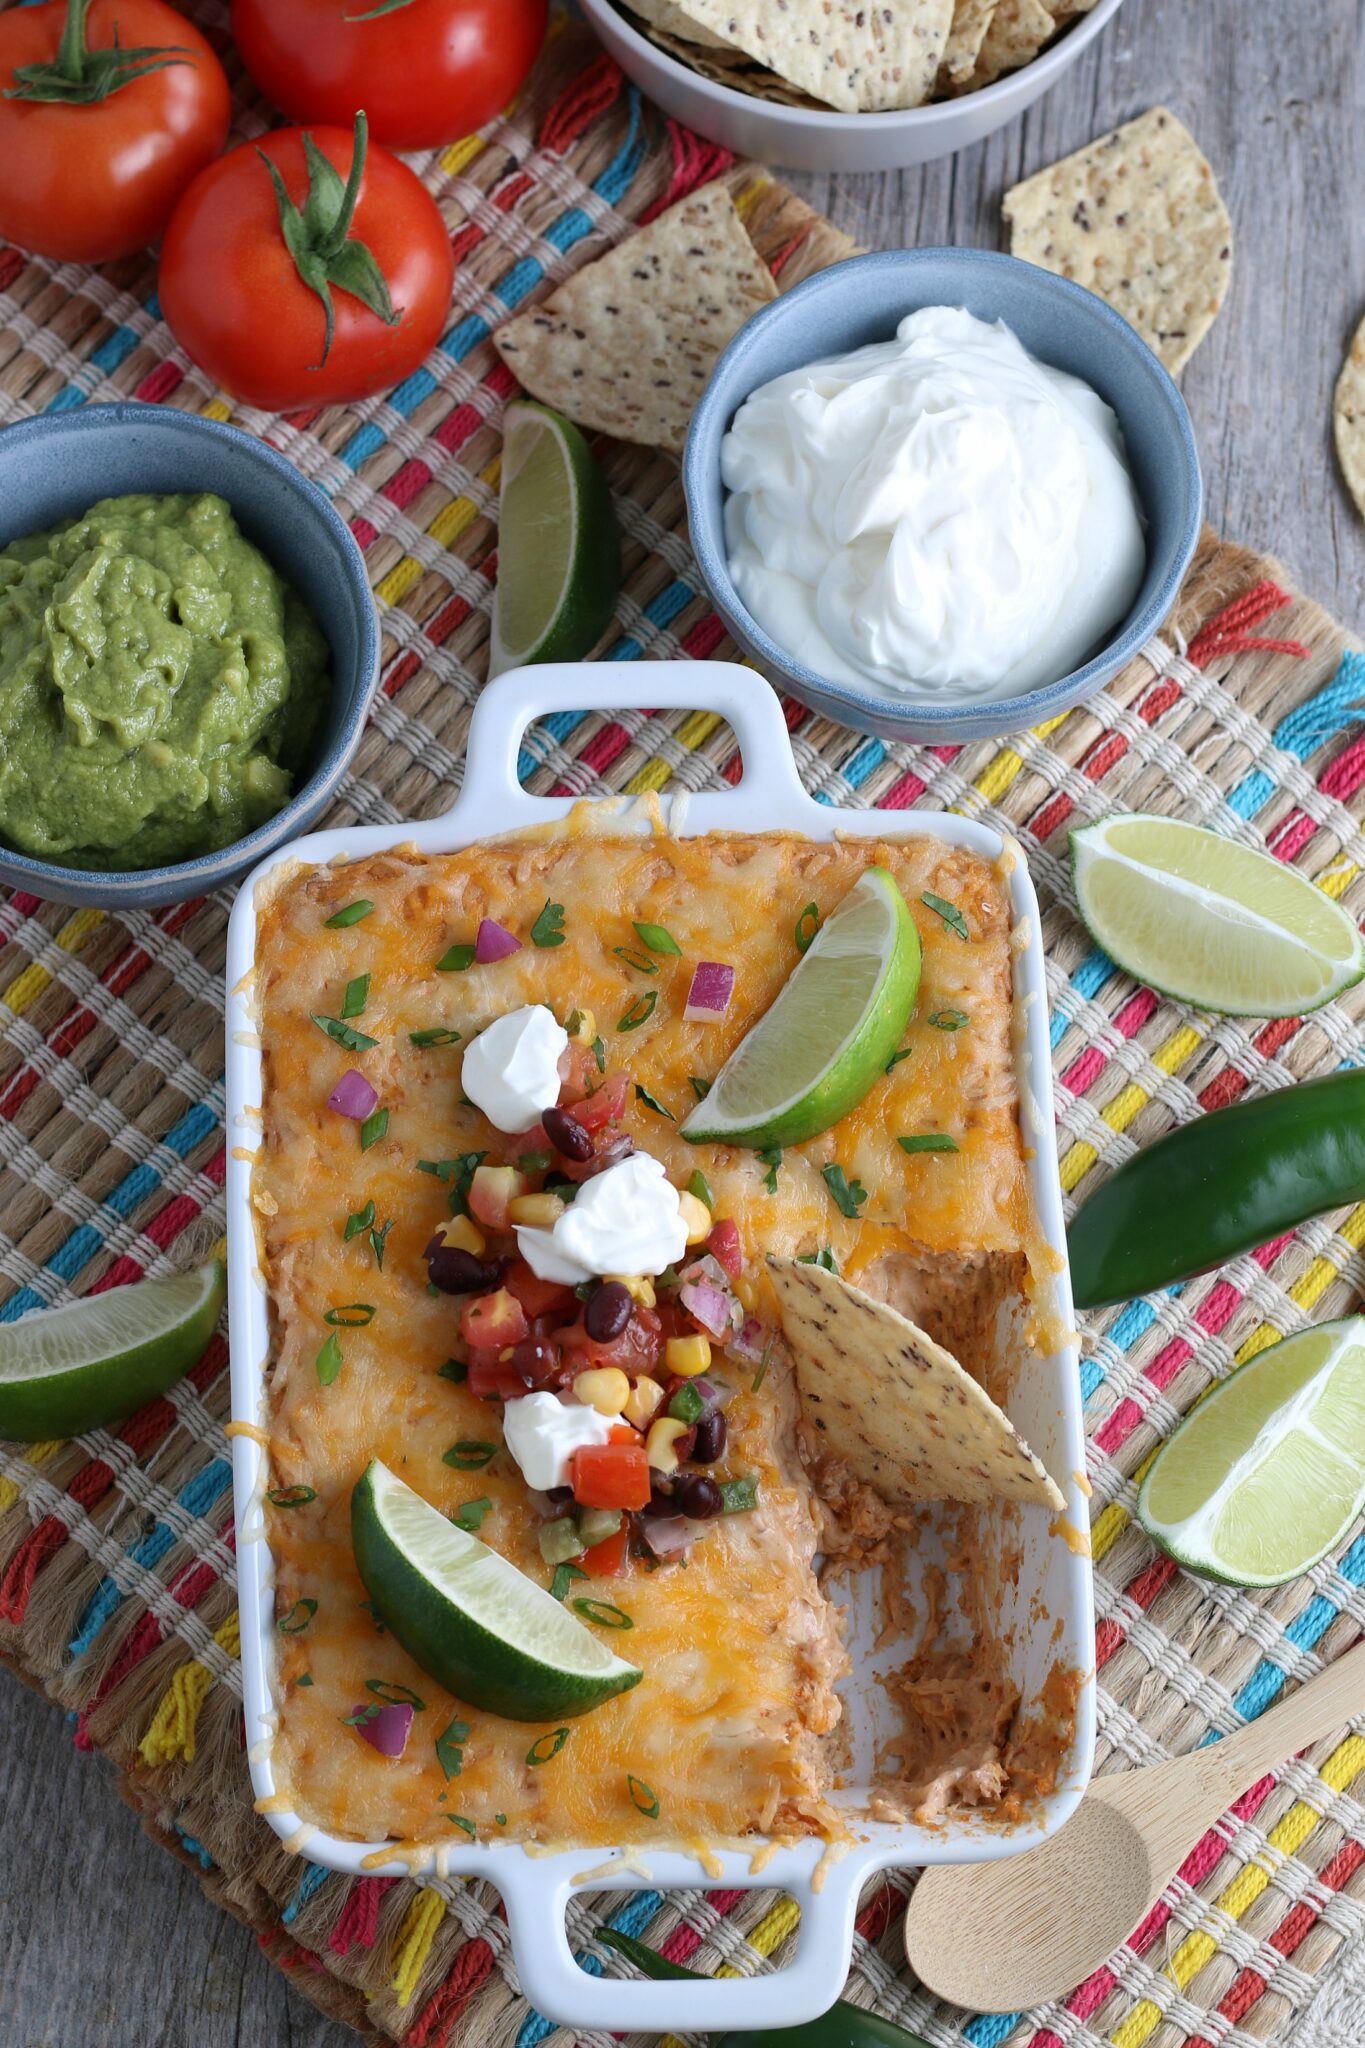 Easy Mexican Bean Dip Recipe - 5 Minutes to Prep & So Delicious ...